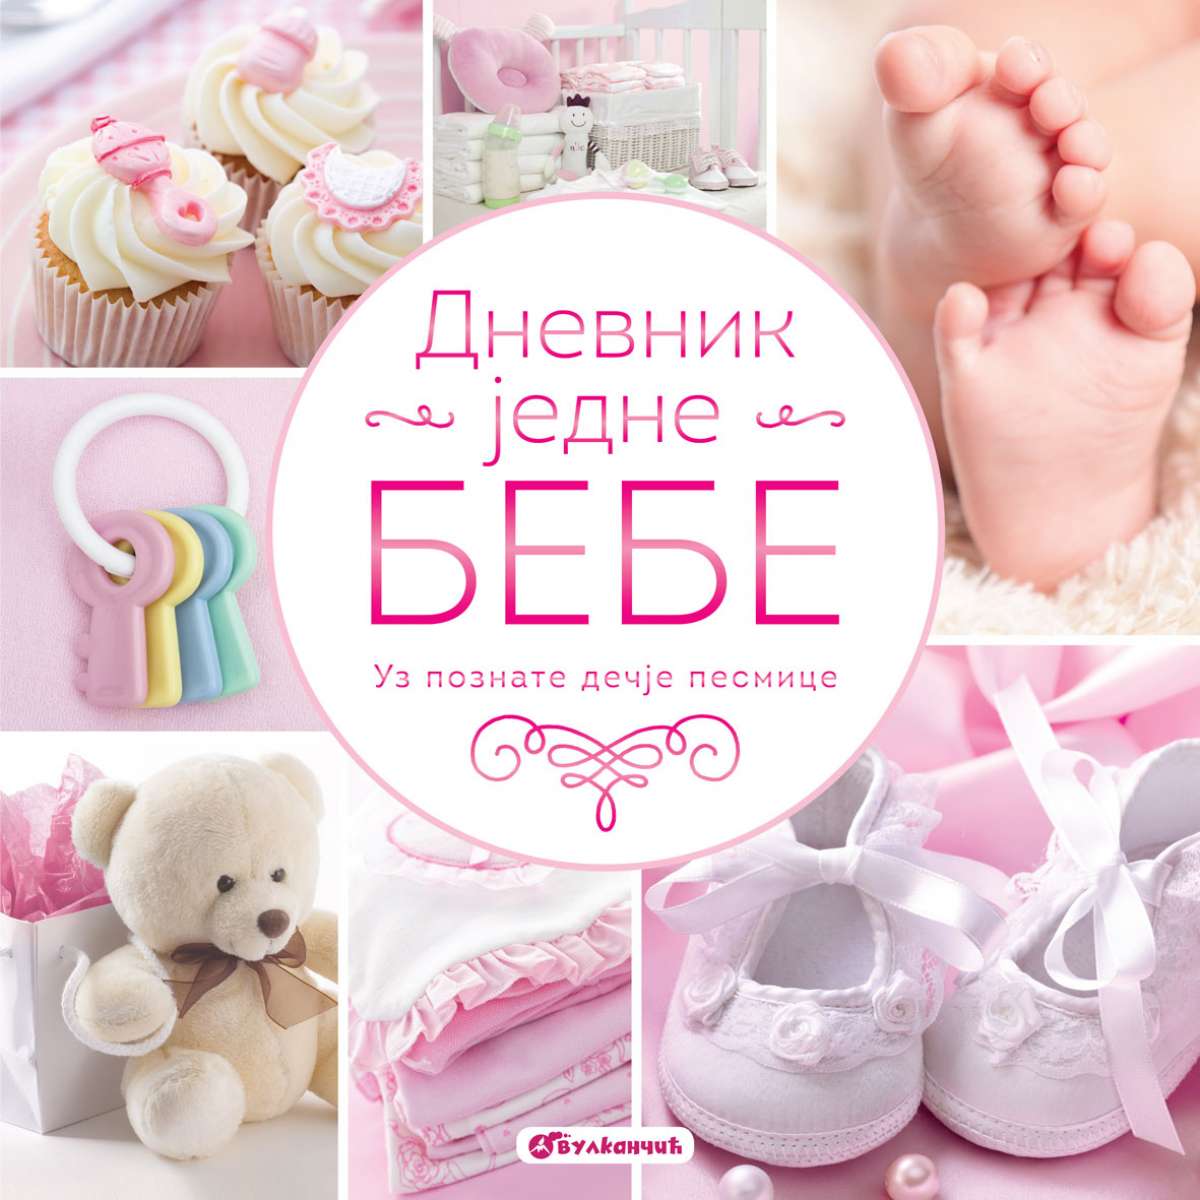 Dnevnik jedne bebe - za devojčice 